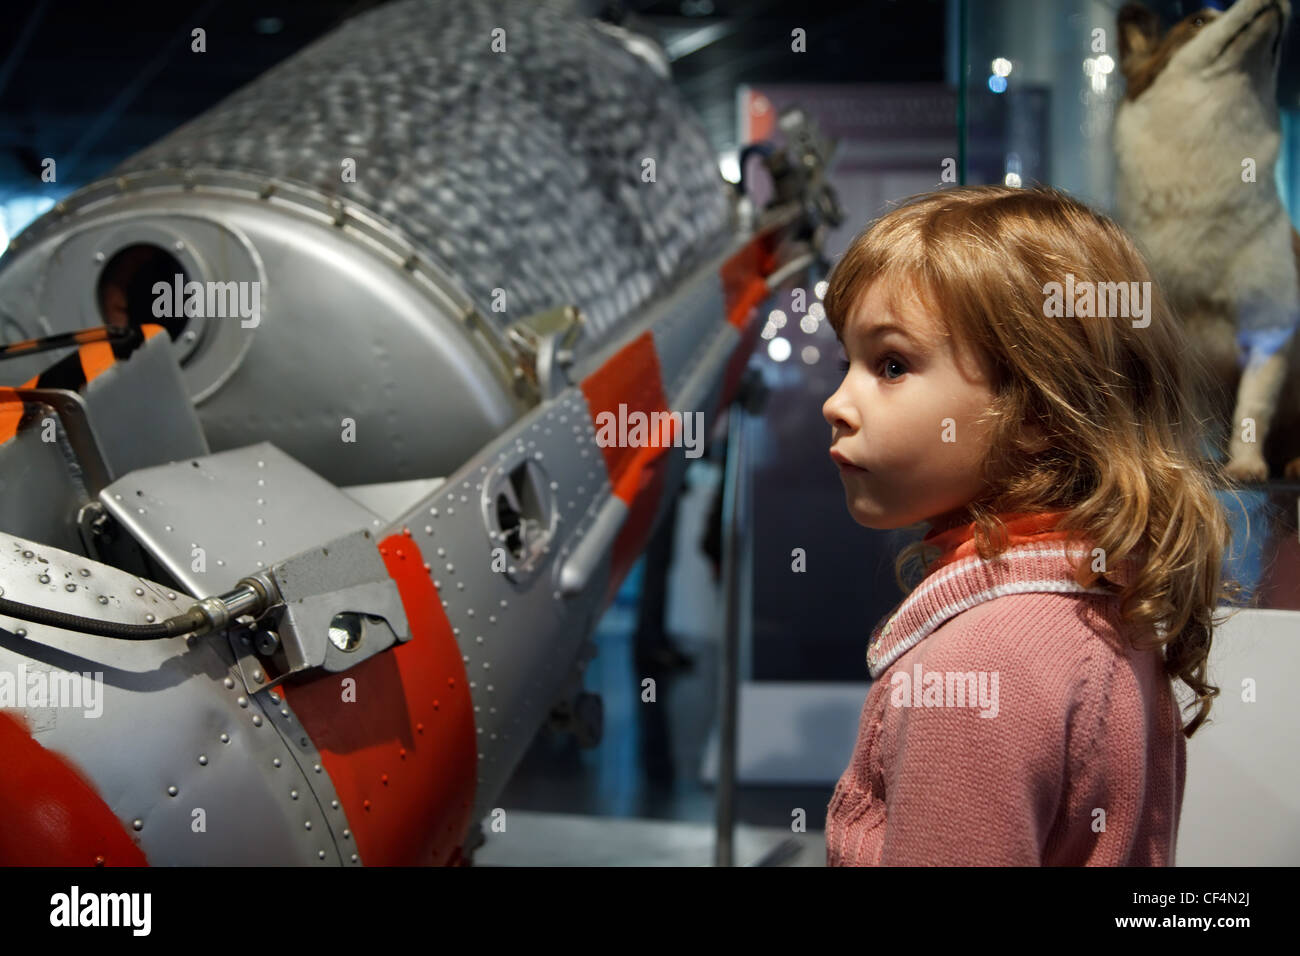 Mosca, Russia - 8 novembre: in un museo astronautica familiarizzare i bambini con historyNovember 8, 2009 a Mosca, in Russia. Foto Stock